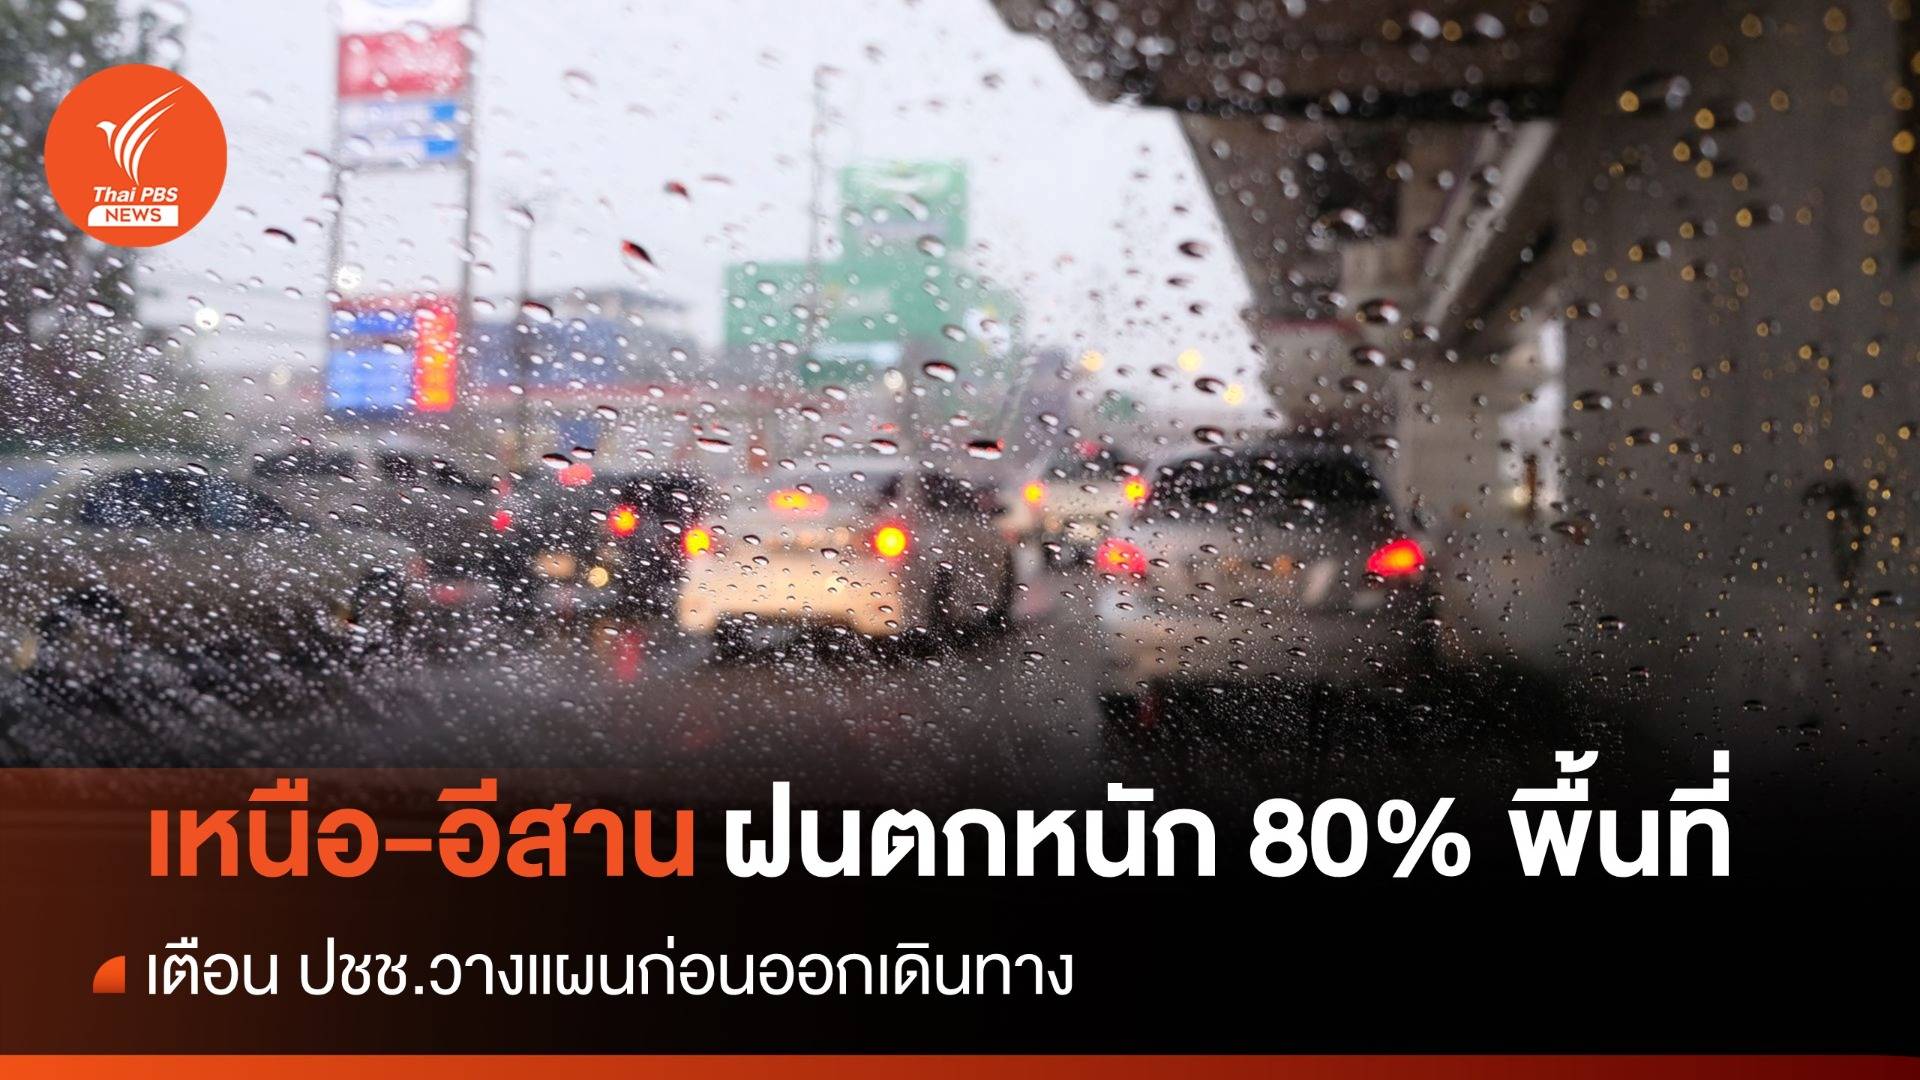 สภาพอากาศวันนี้ เตือน ปชช. "ฝนตกหนัก" ทั่วไทย 60-80% พื้นที่